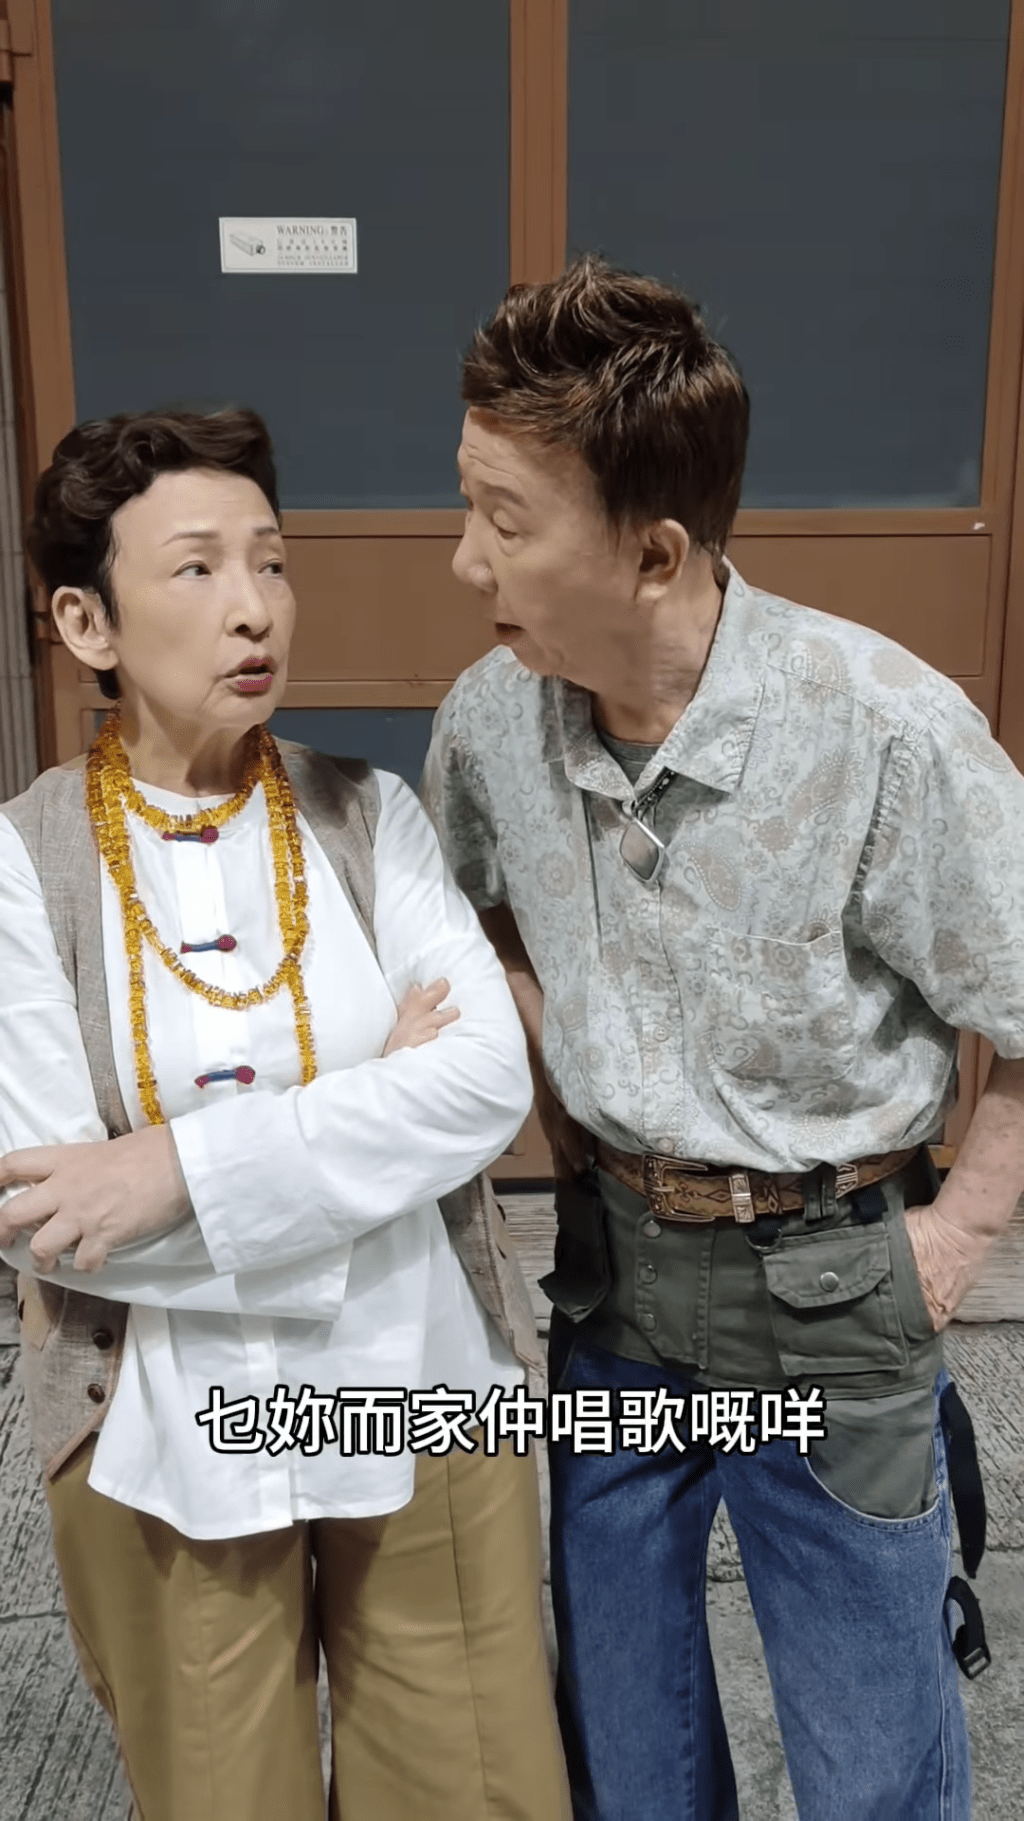 尹光笑问冯素波（左）现时还唱歌吗？